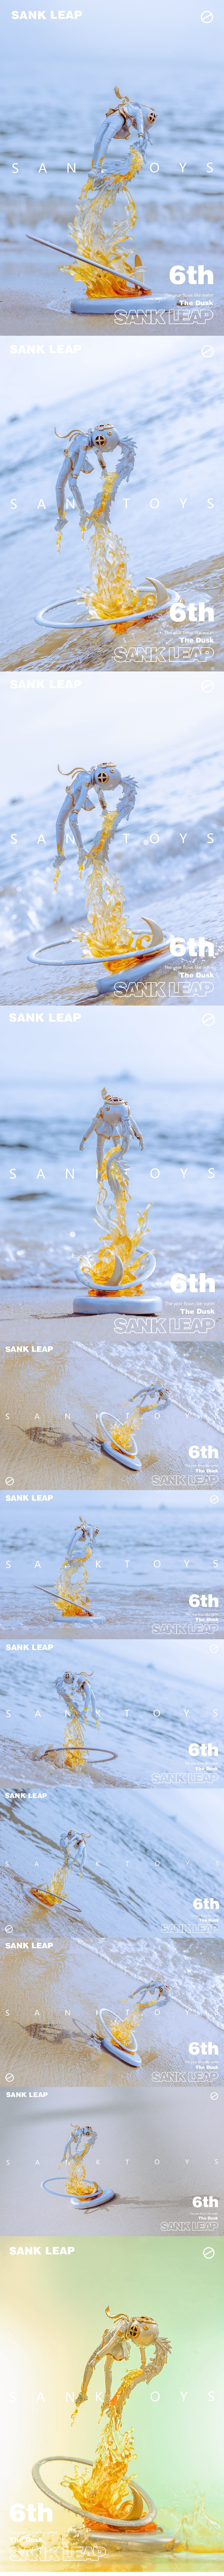 Sank-Leap-The Dusk